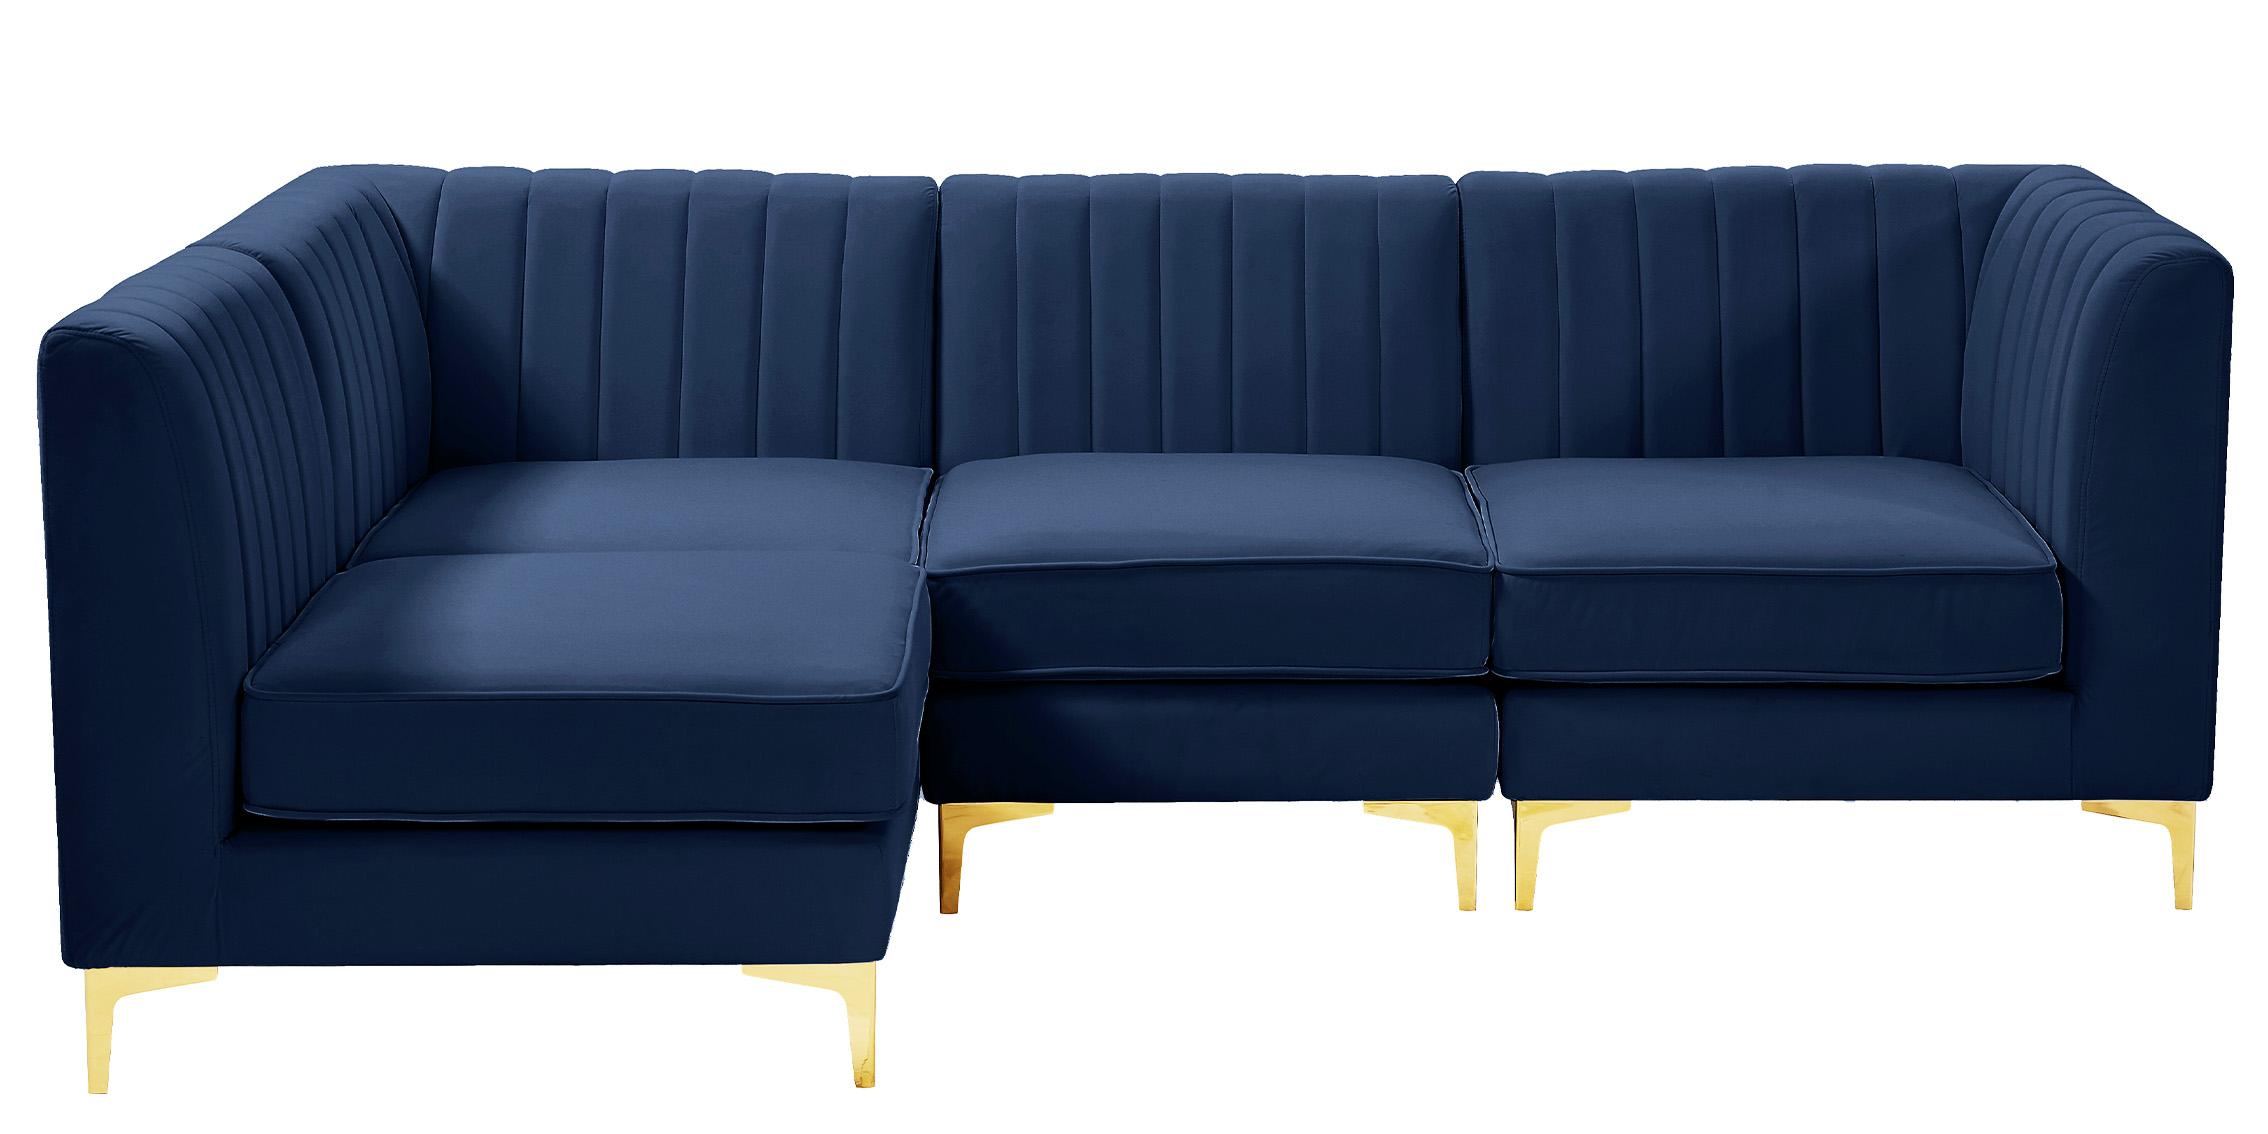 

        
Meridian Furniture ALINA 604Navy-Sec4A Modular Sectional Sofa Navy Velvet 94308258959
